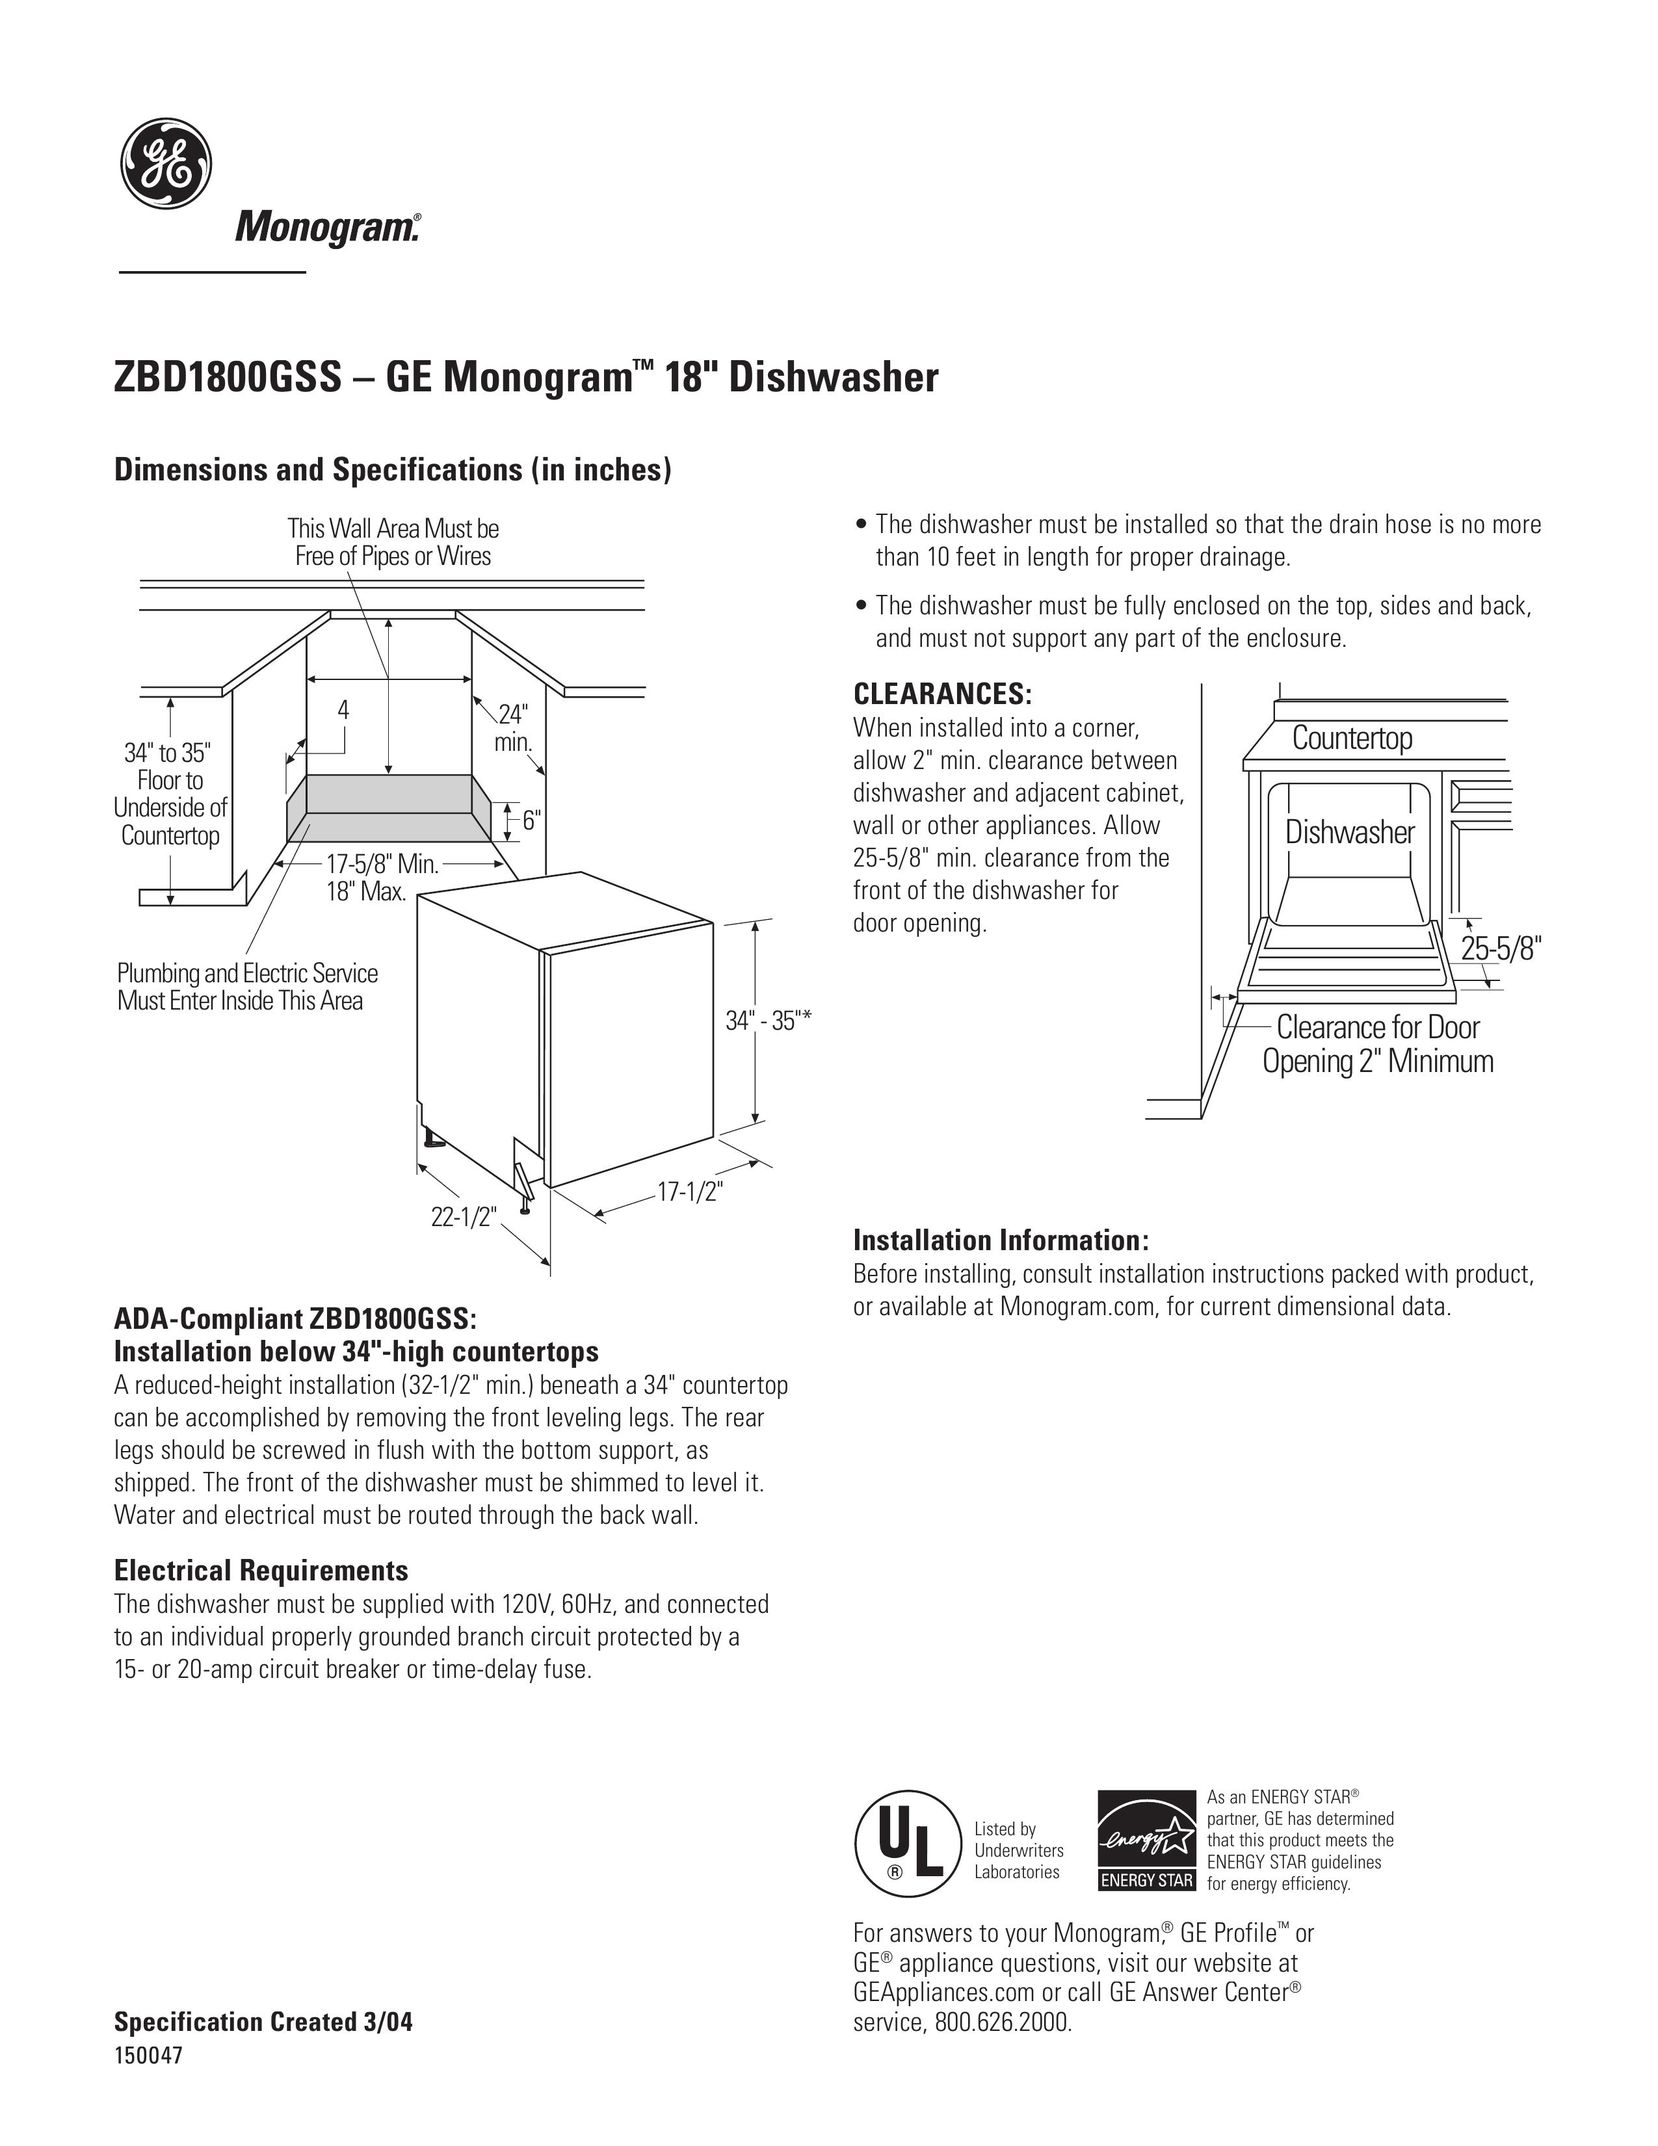 GE Monogram ZBD1800GSS Dishwasher User Manual